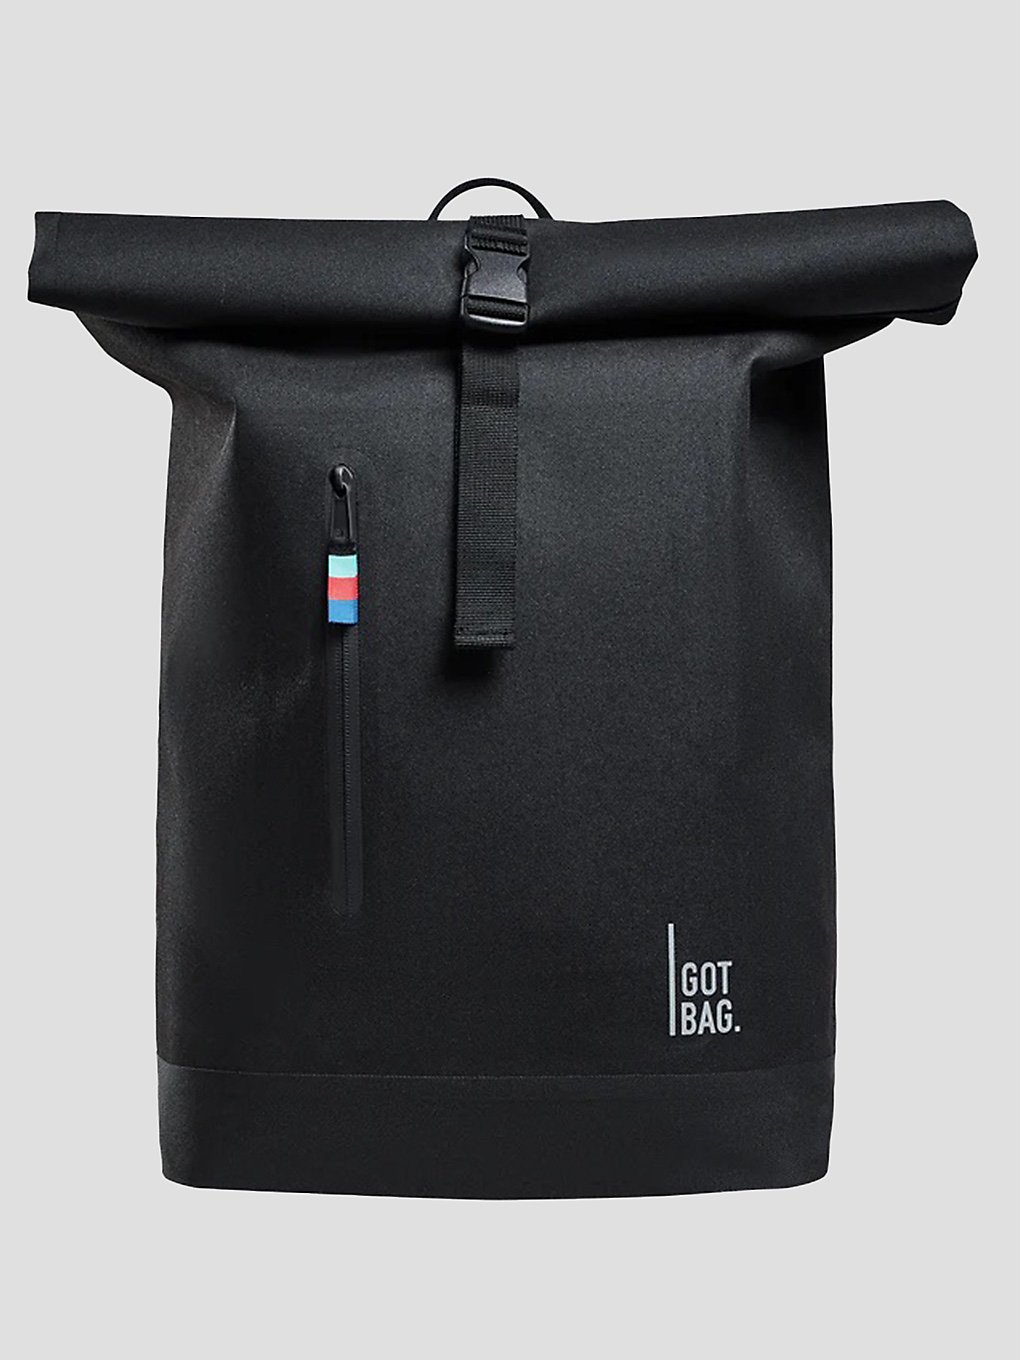 Got Bag Rolltop Lite Rucksack black kaufen